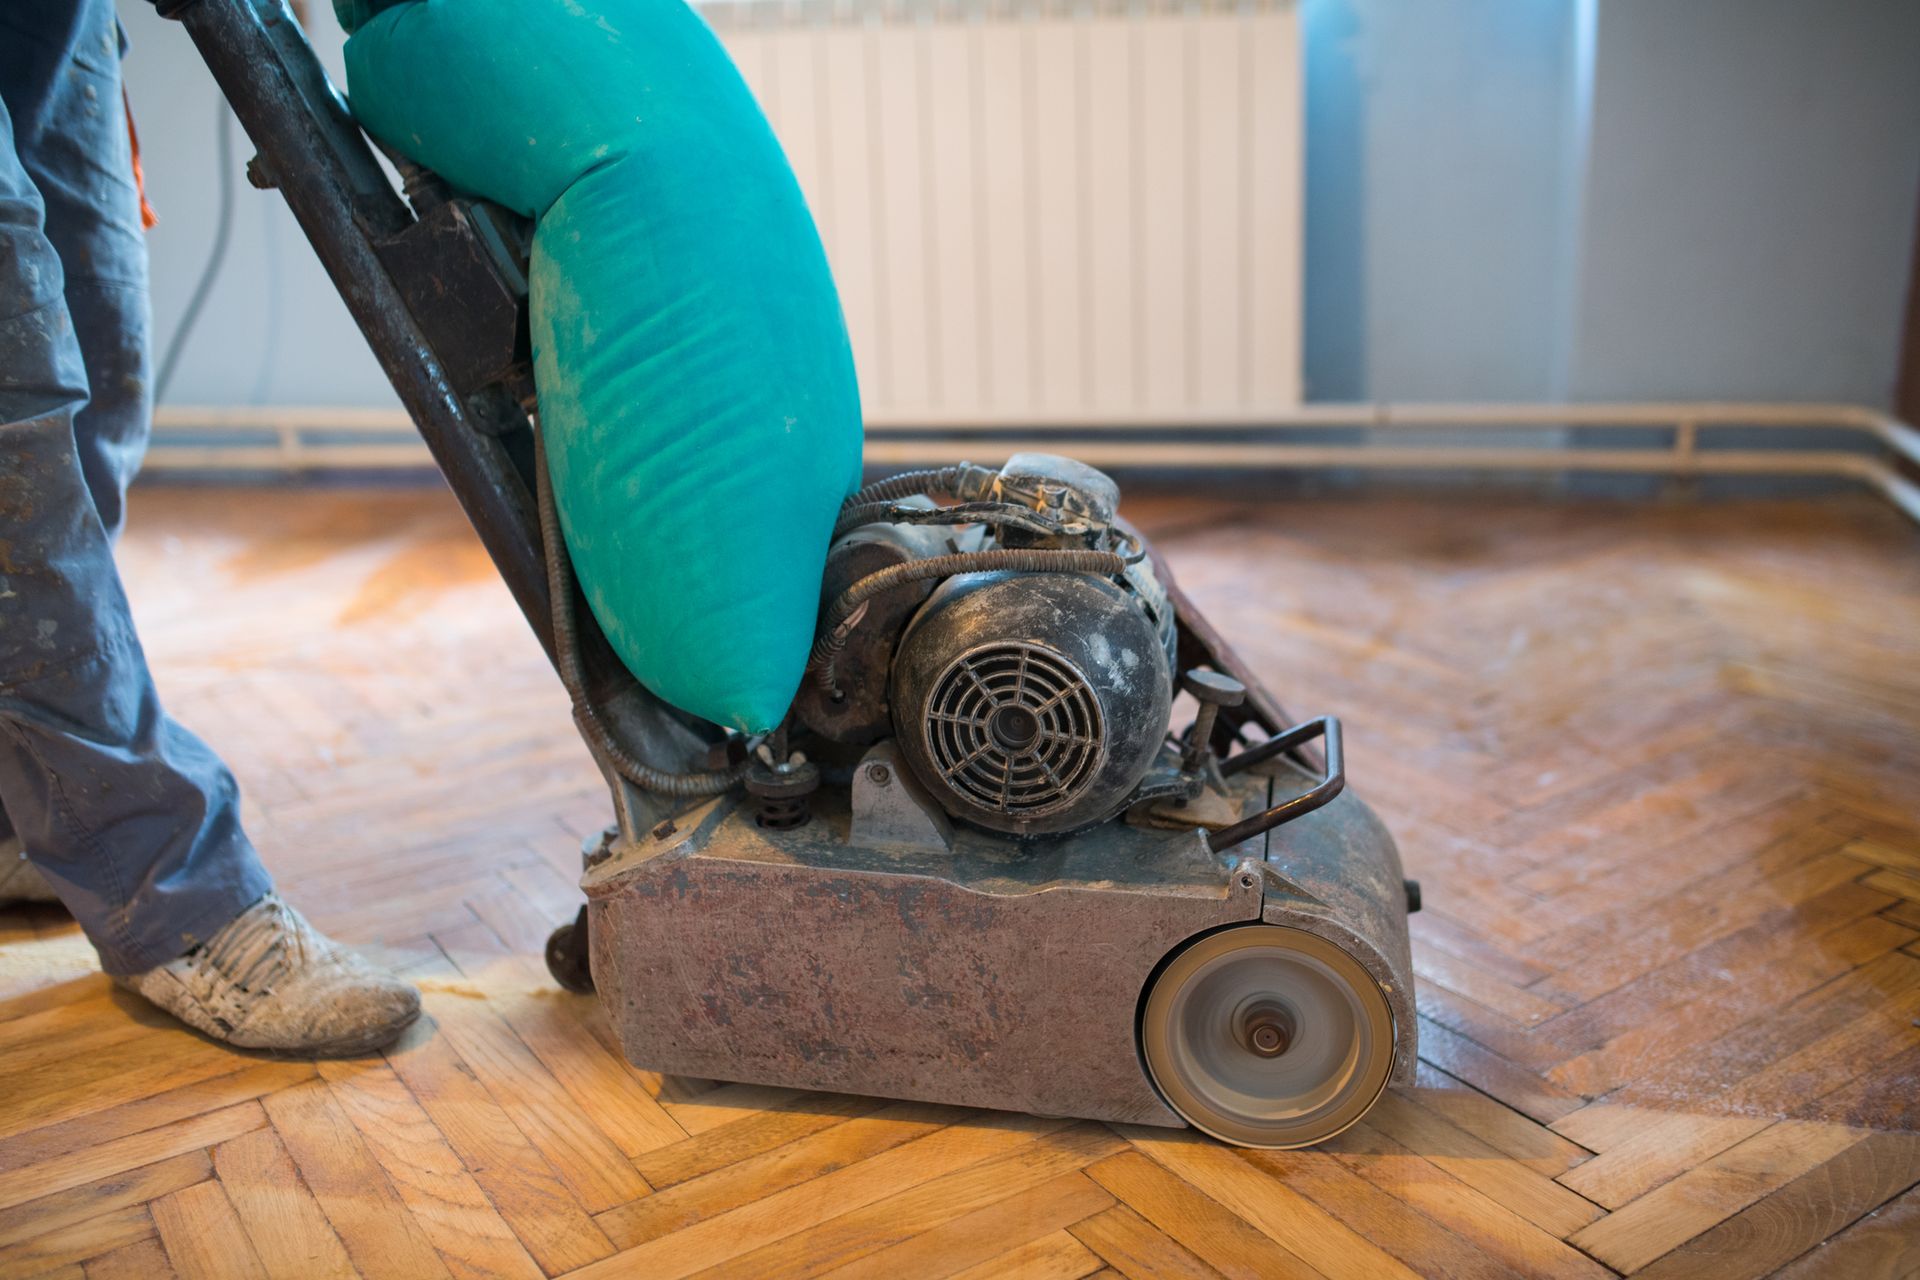 Floor refinishing professional sanding a hardwood floor with a floor sander